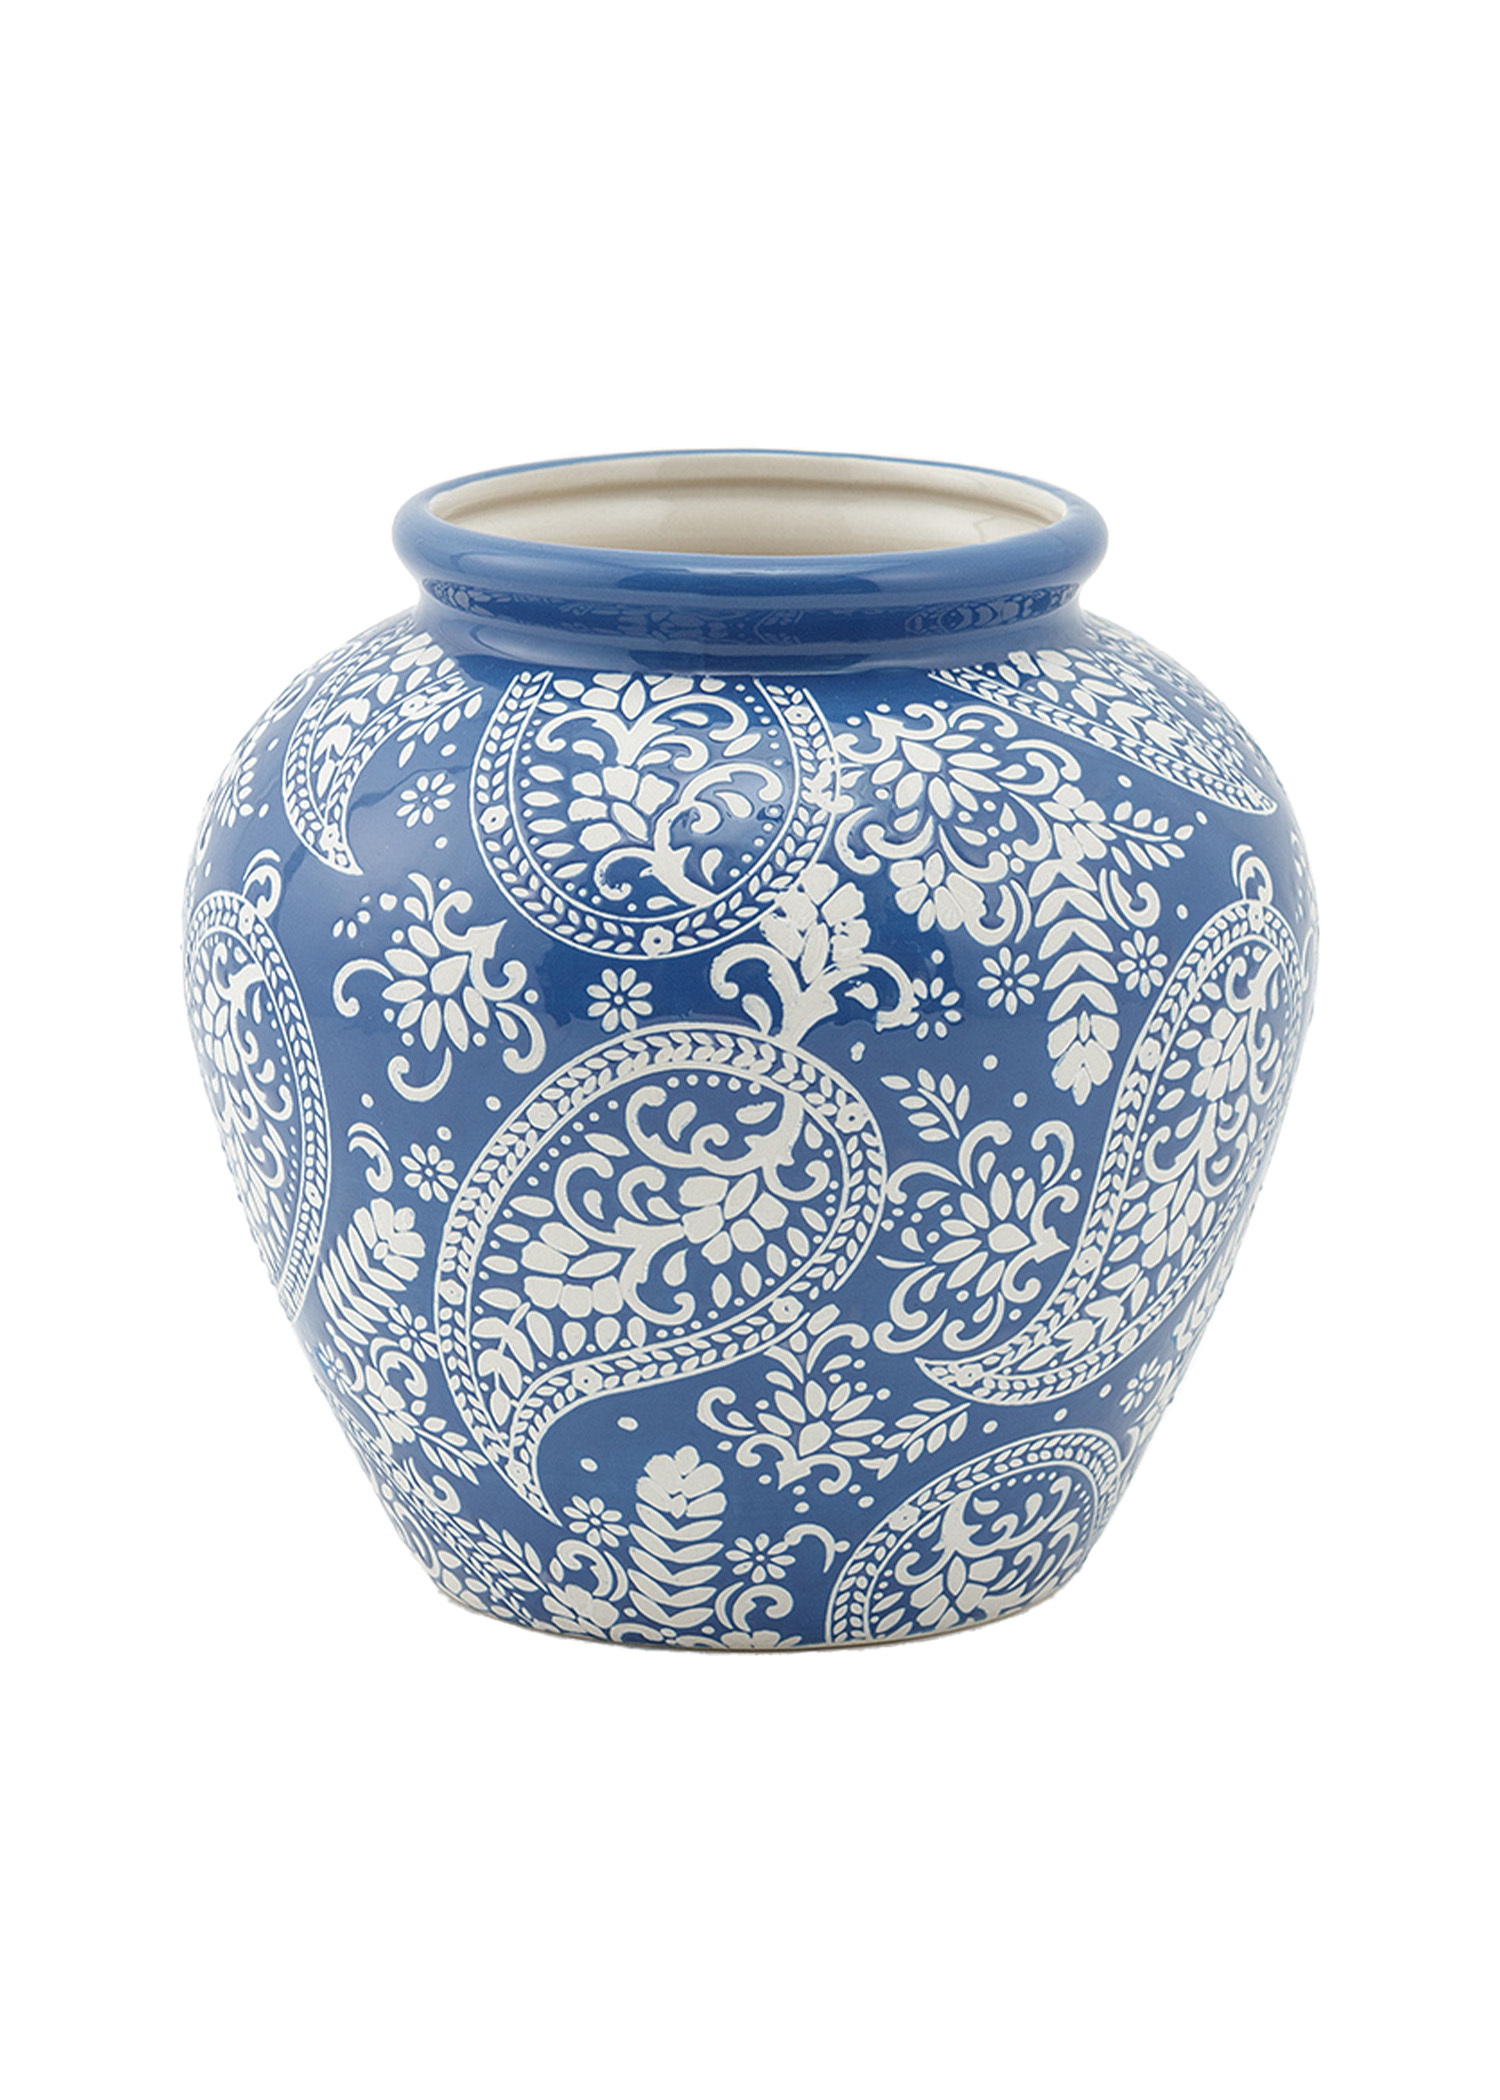 Blue paisley patterned vase Image 0